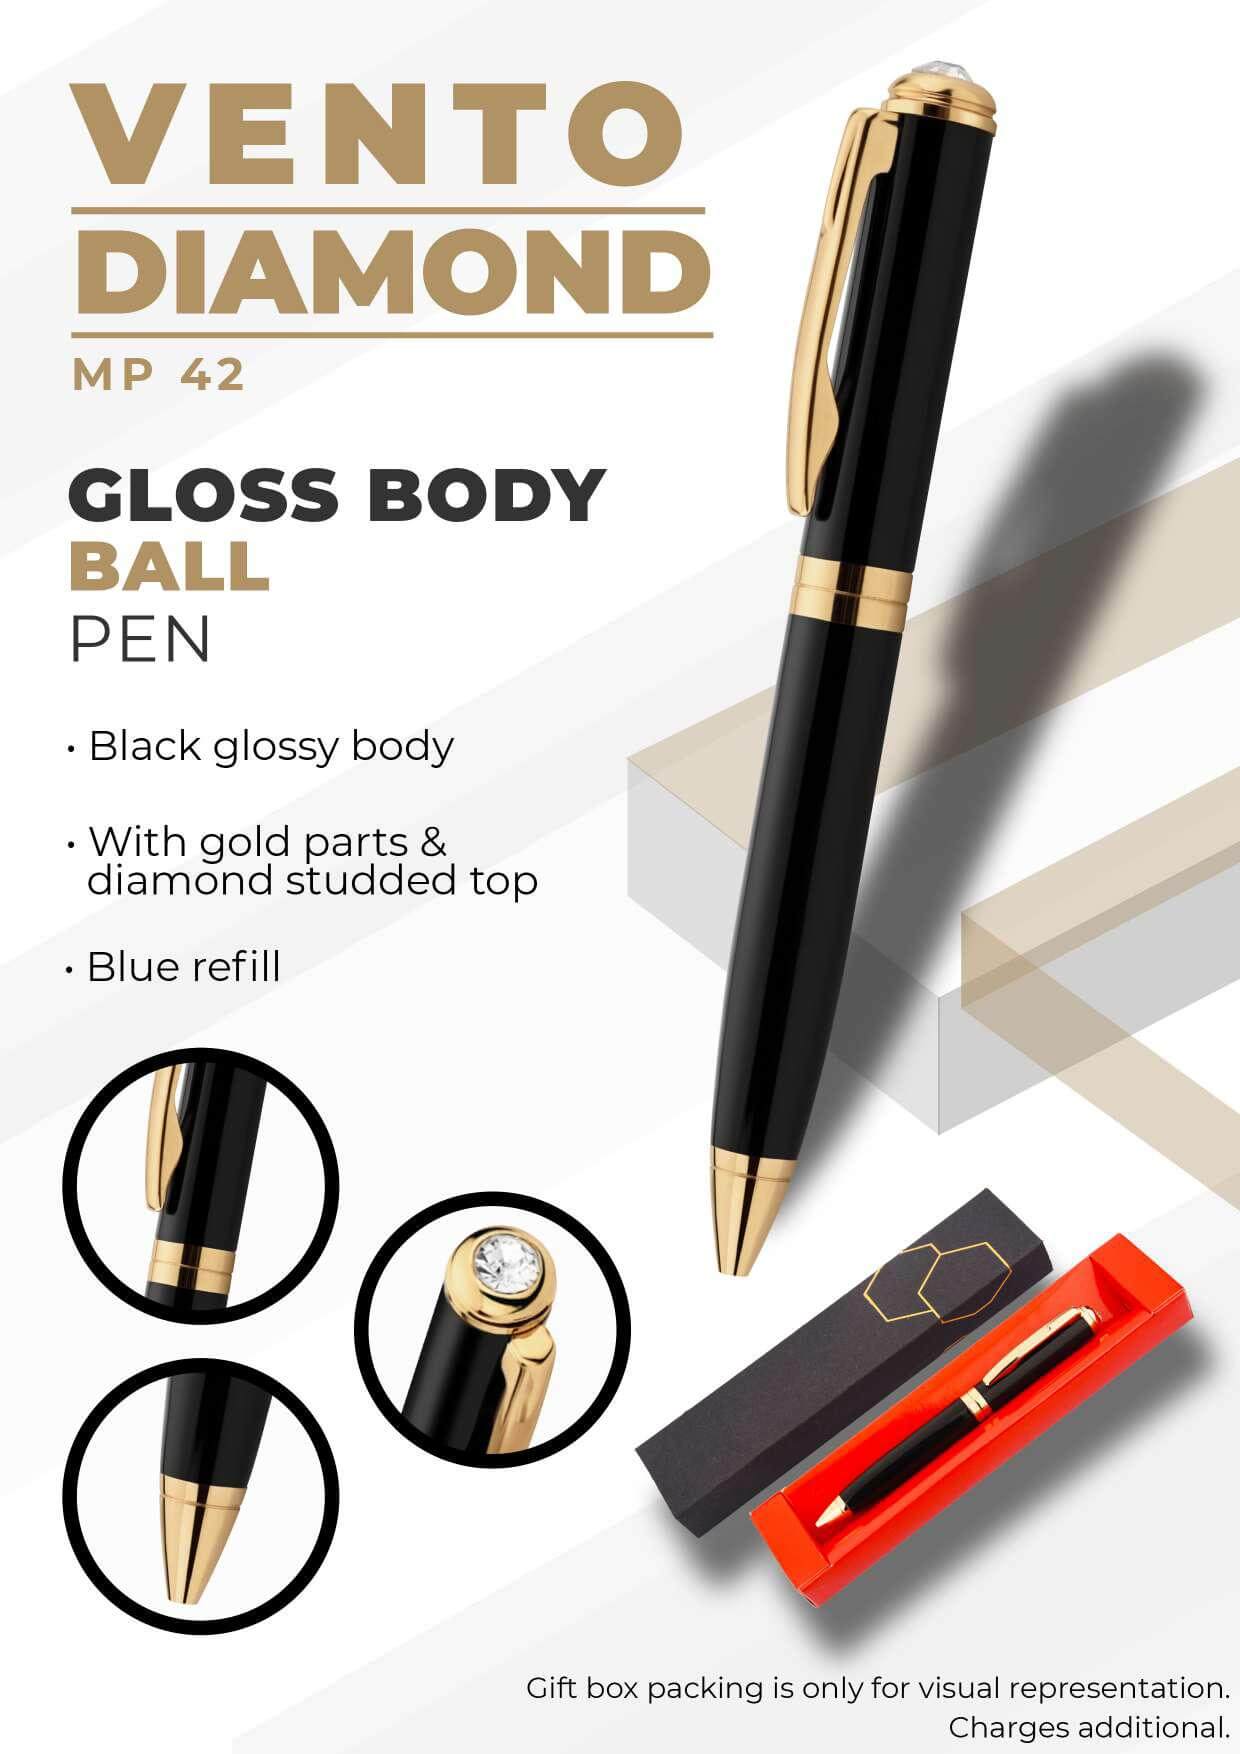 Gloss Body Vento Diamond Ball Pen